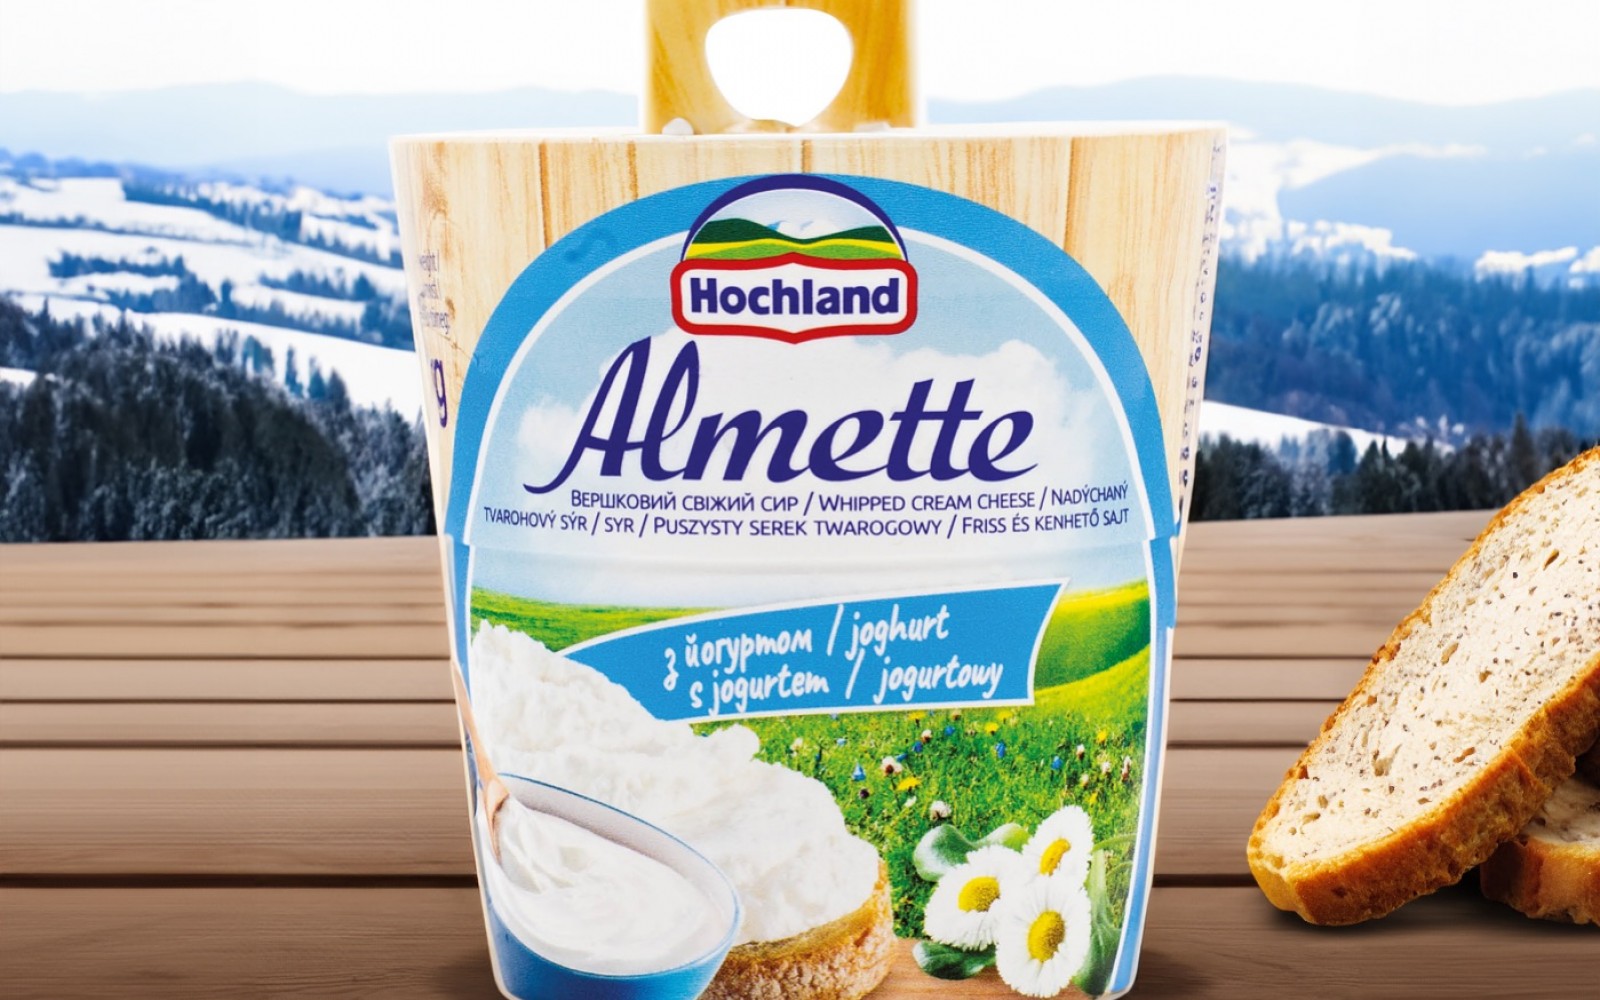 Fedezd fel az Almette sajtkrémek változatos világát!